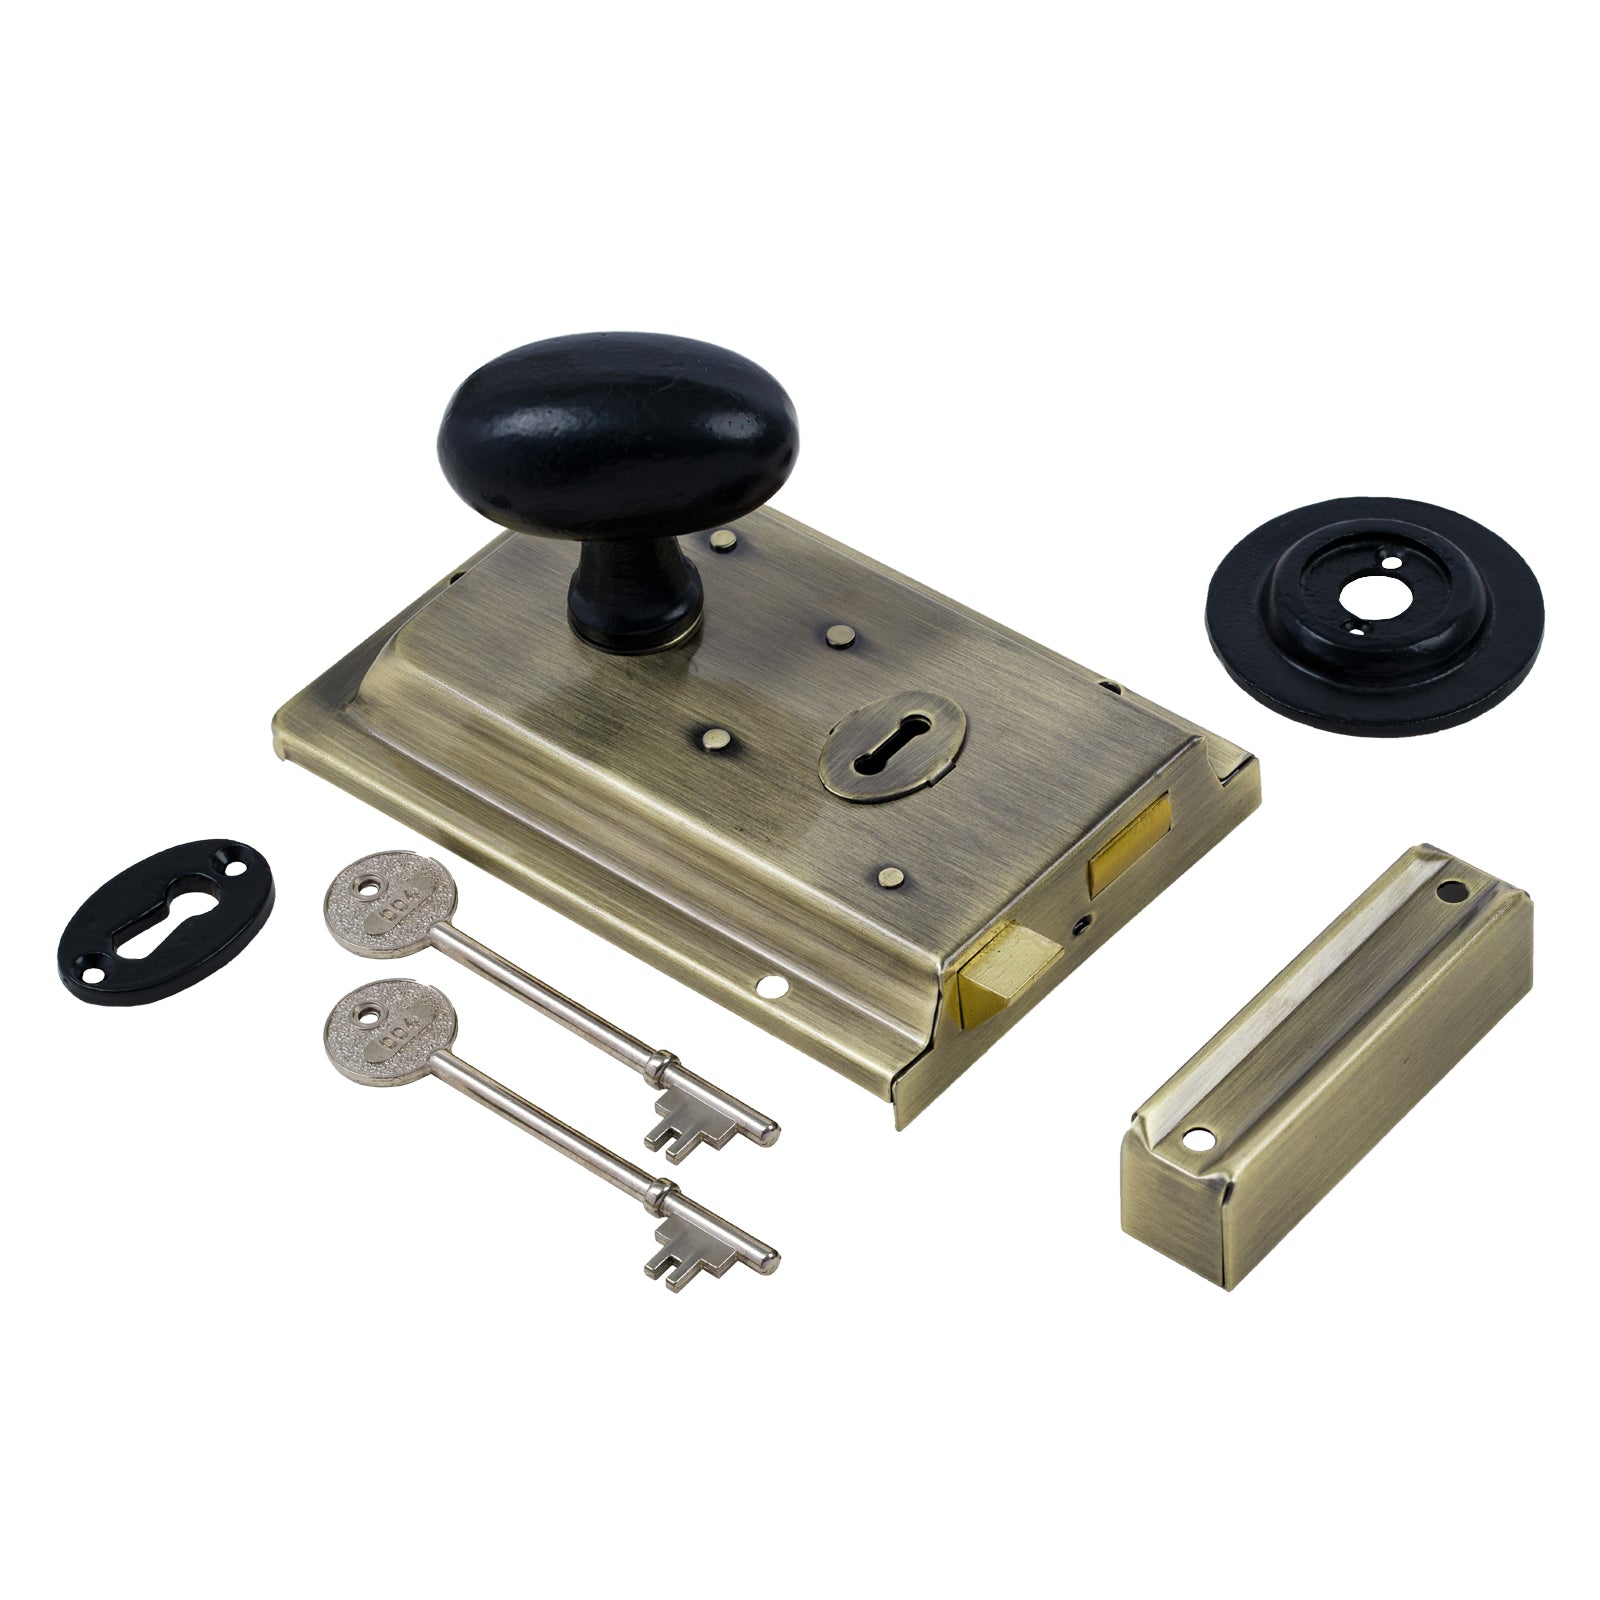 Oval door handles - Oval brass door knobs - Rim lock handles